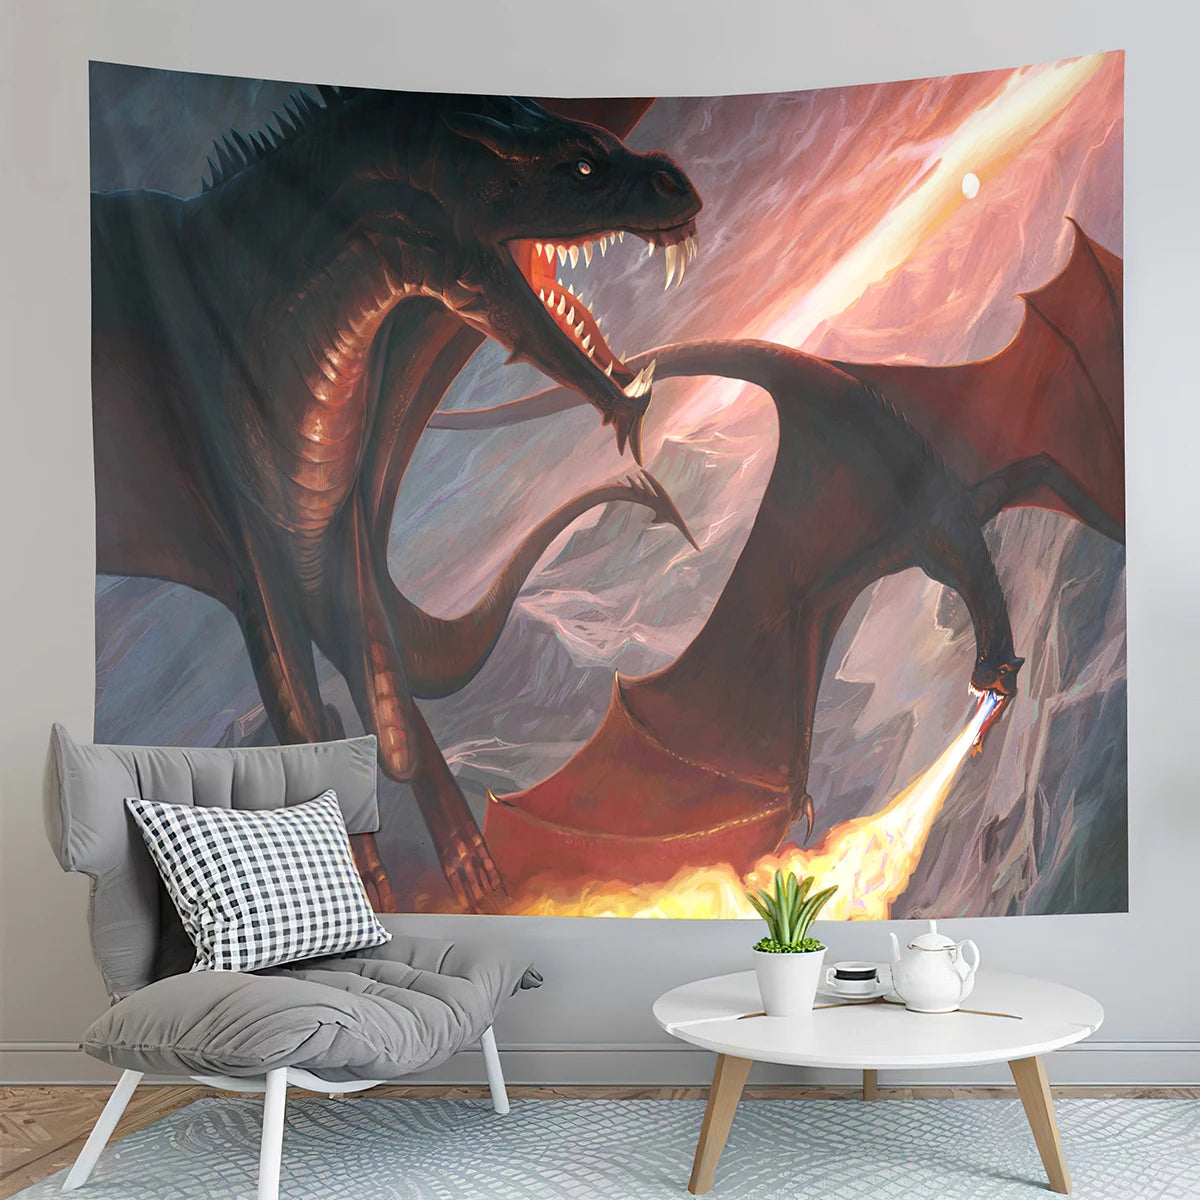 Tapisserie de Dragon médiévale, tapisserie de coucher de soleil en forêt, tapisserie d'animaux du monde fantastique, pour chambre à coucher, salon, décoration de maison